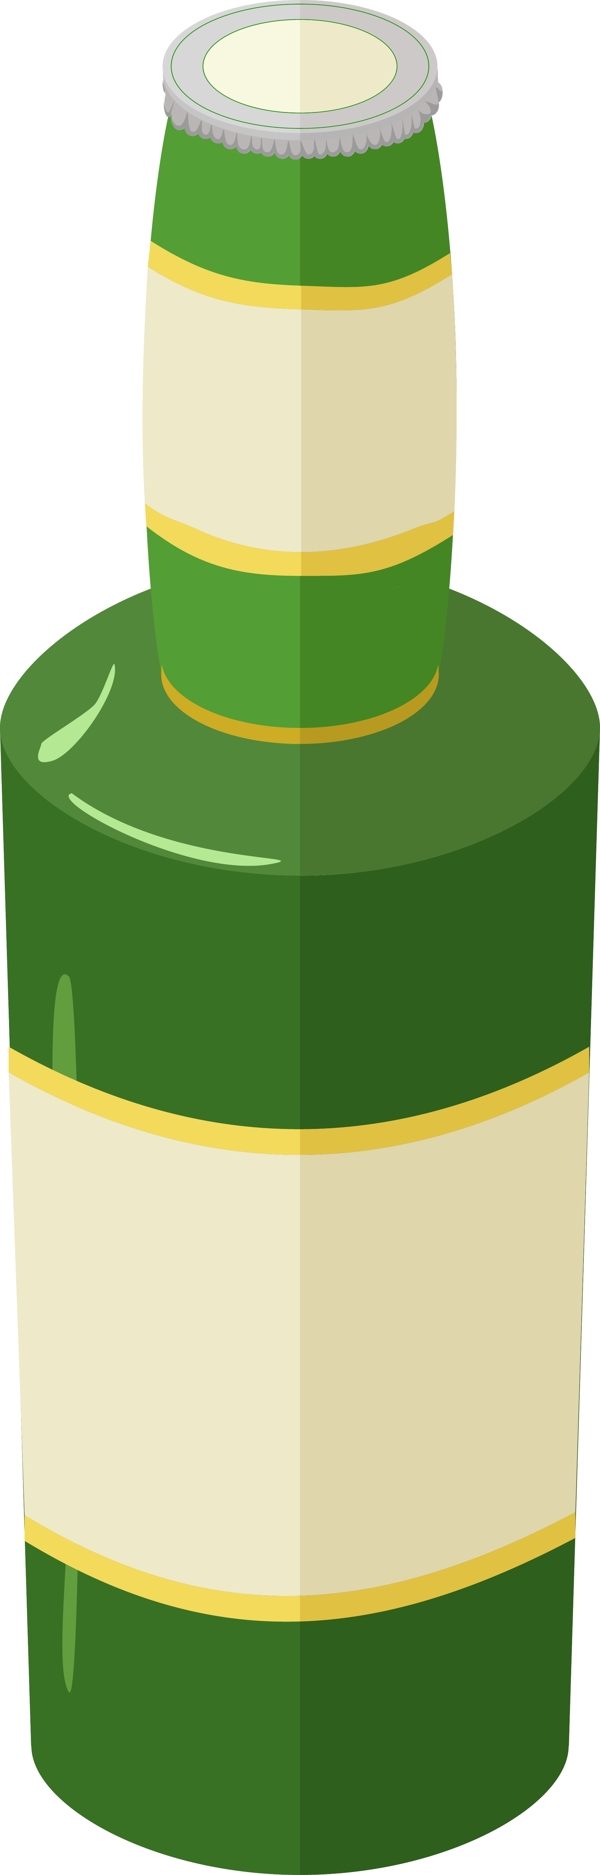 绿色盘装啤酒插图